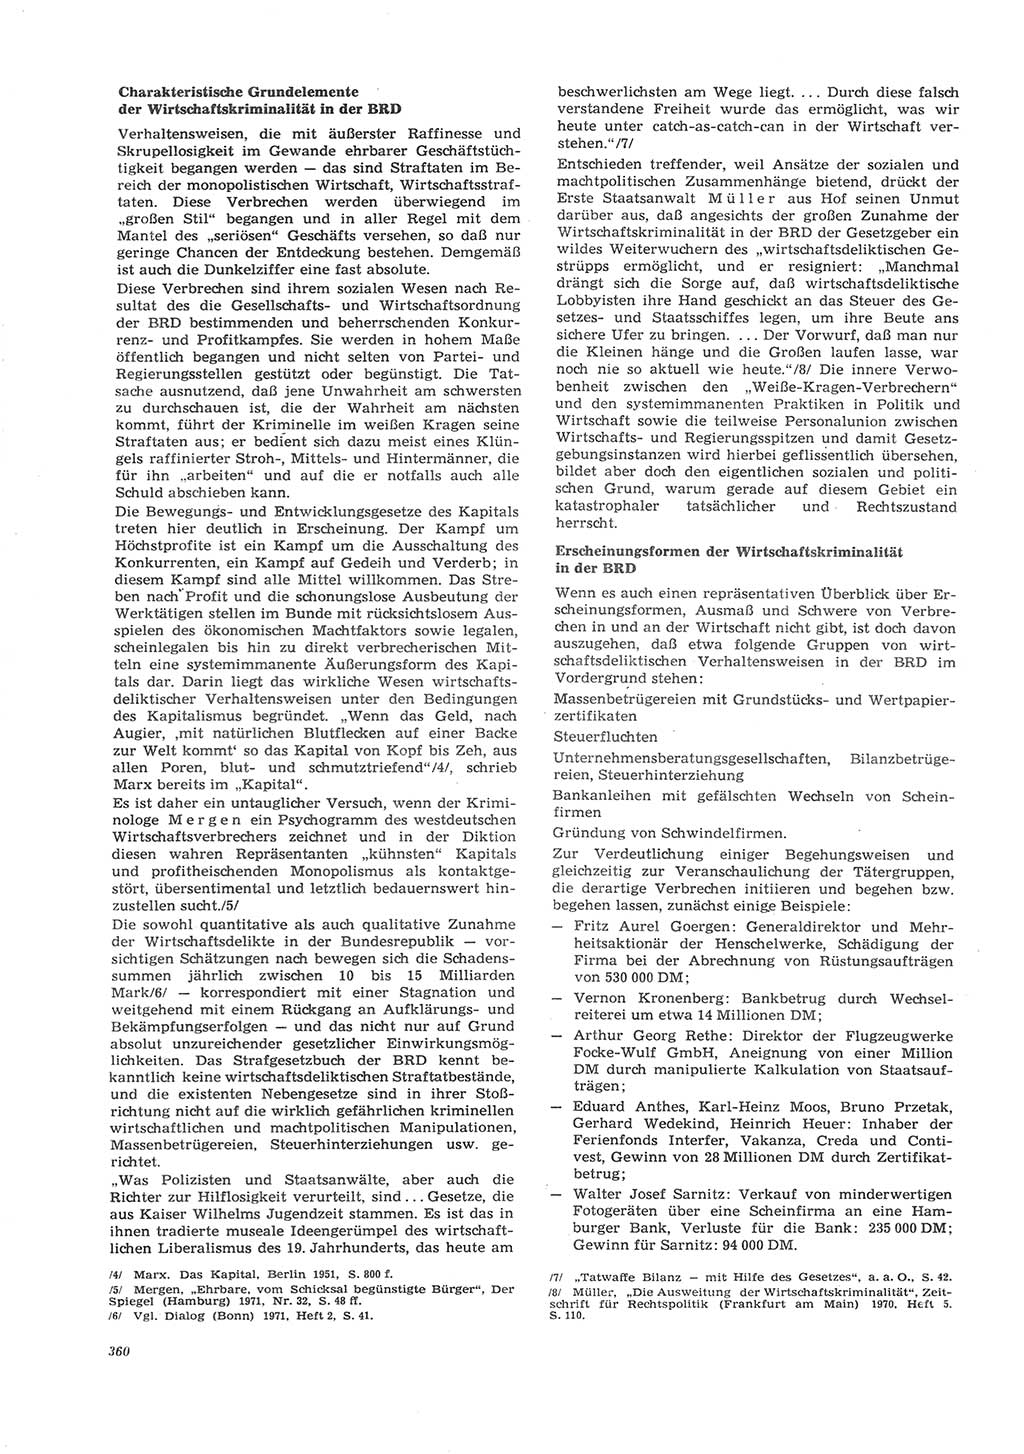 Neue Justiz (NJ), Zeitschrift für Recht und Rechtswissenschaft [Deutsche Demokratische Republik (DDR)], 26. Jahrgang 1972, Seite 360 (NJ DDR 1972, S. 360)